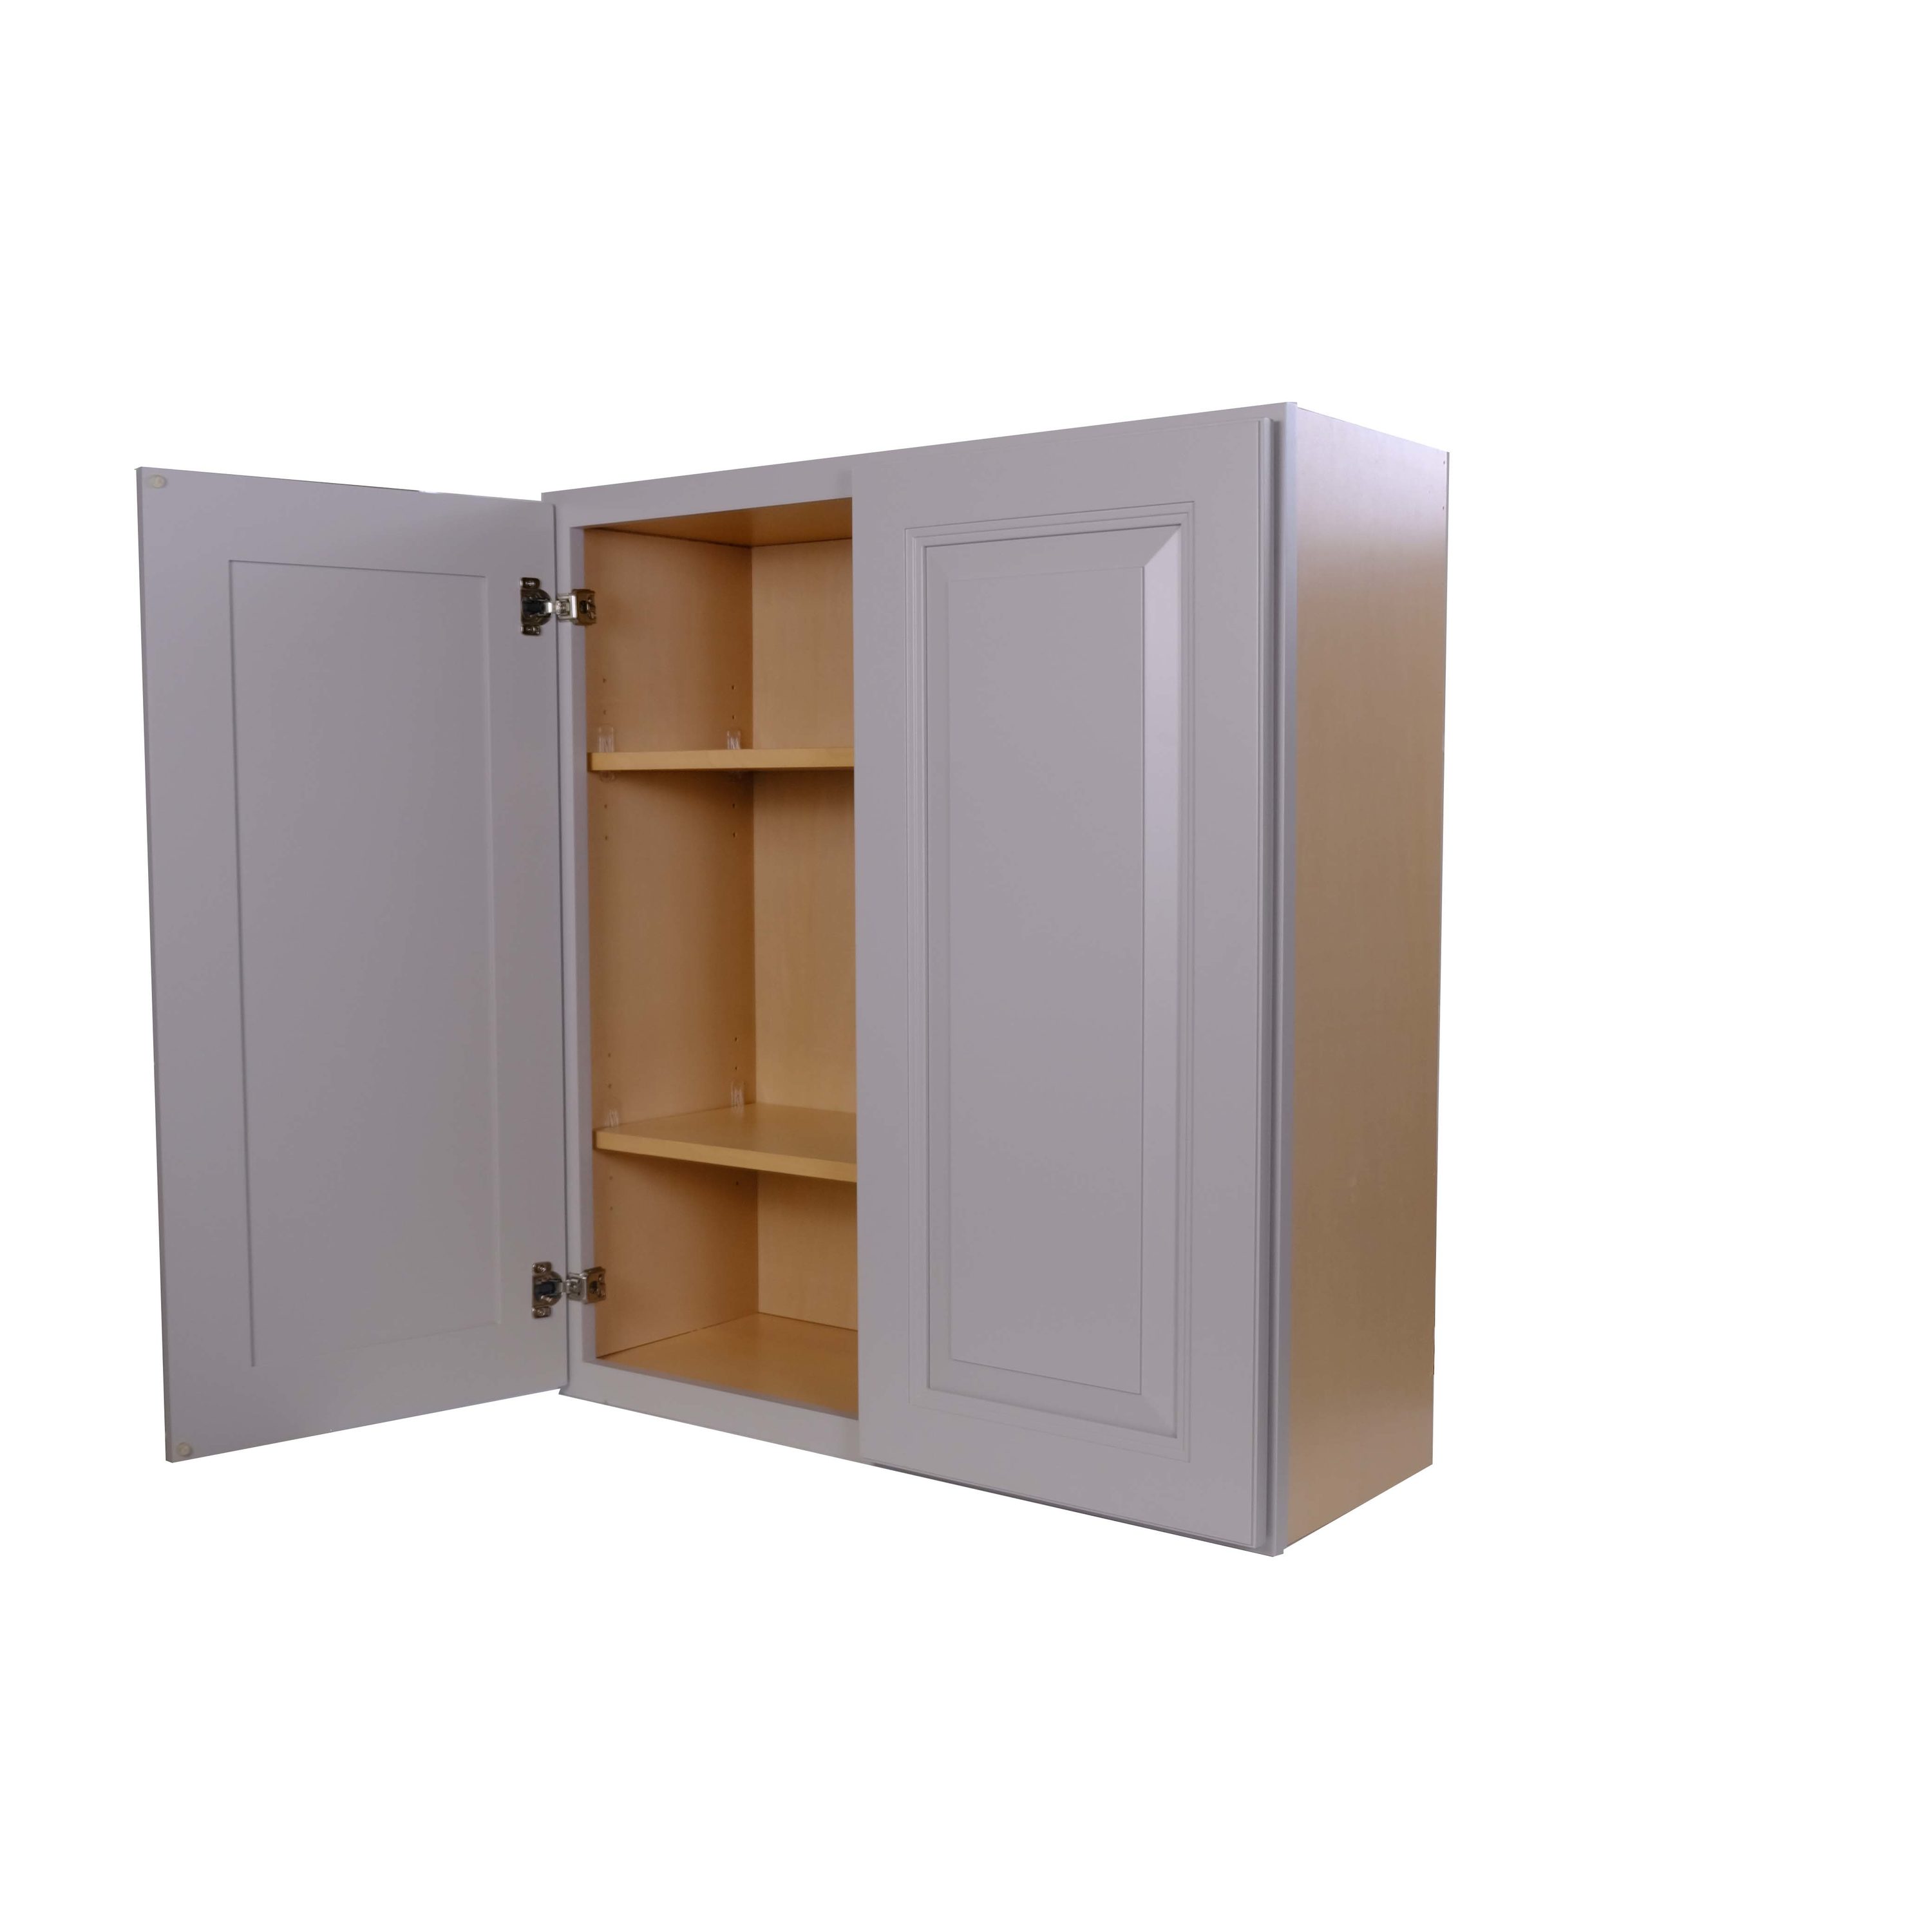 DINAMIC 4-Door Cabinet Wood, 33 x 71.8 x 105.5 cm